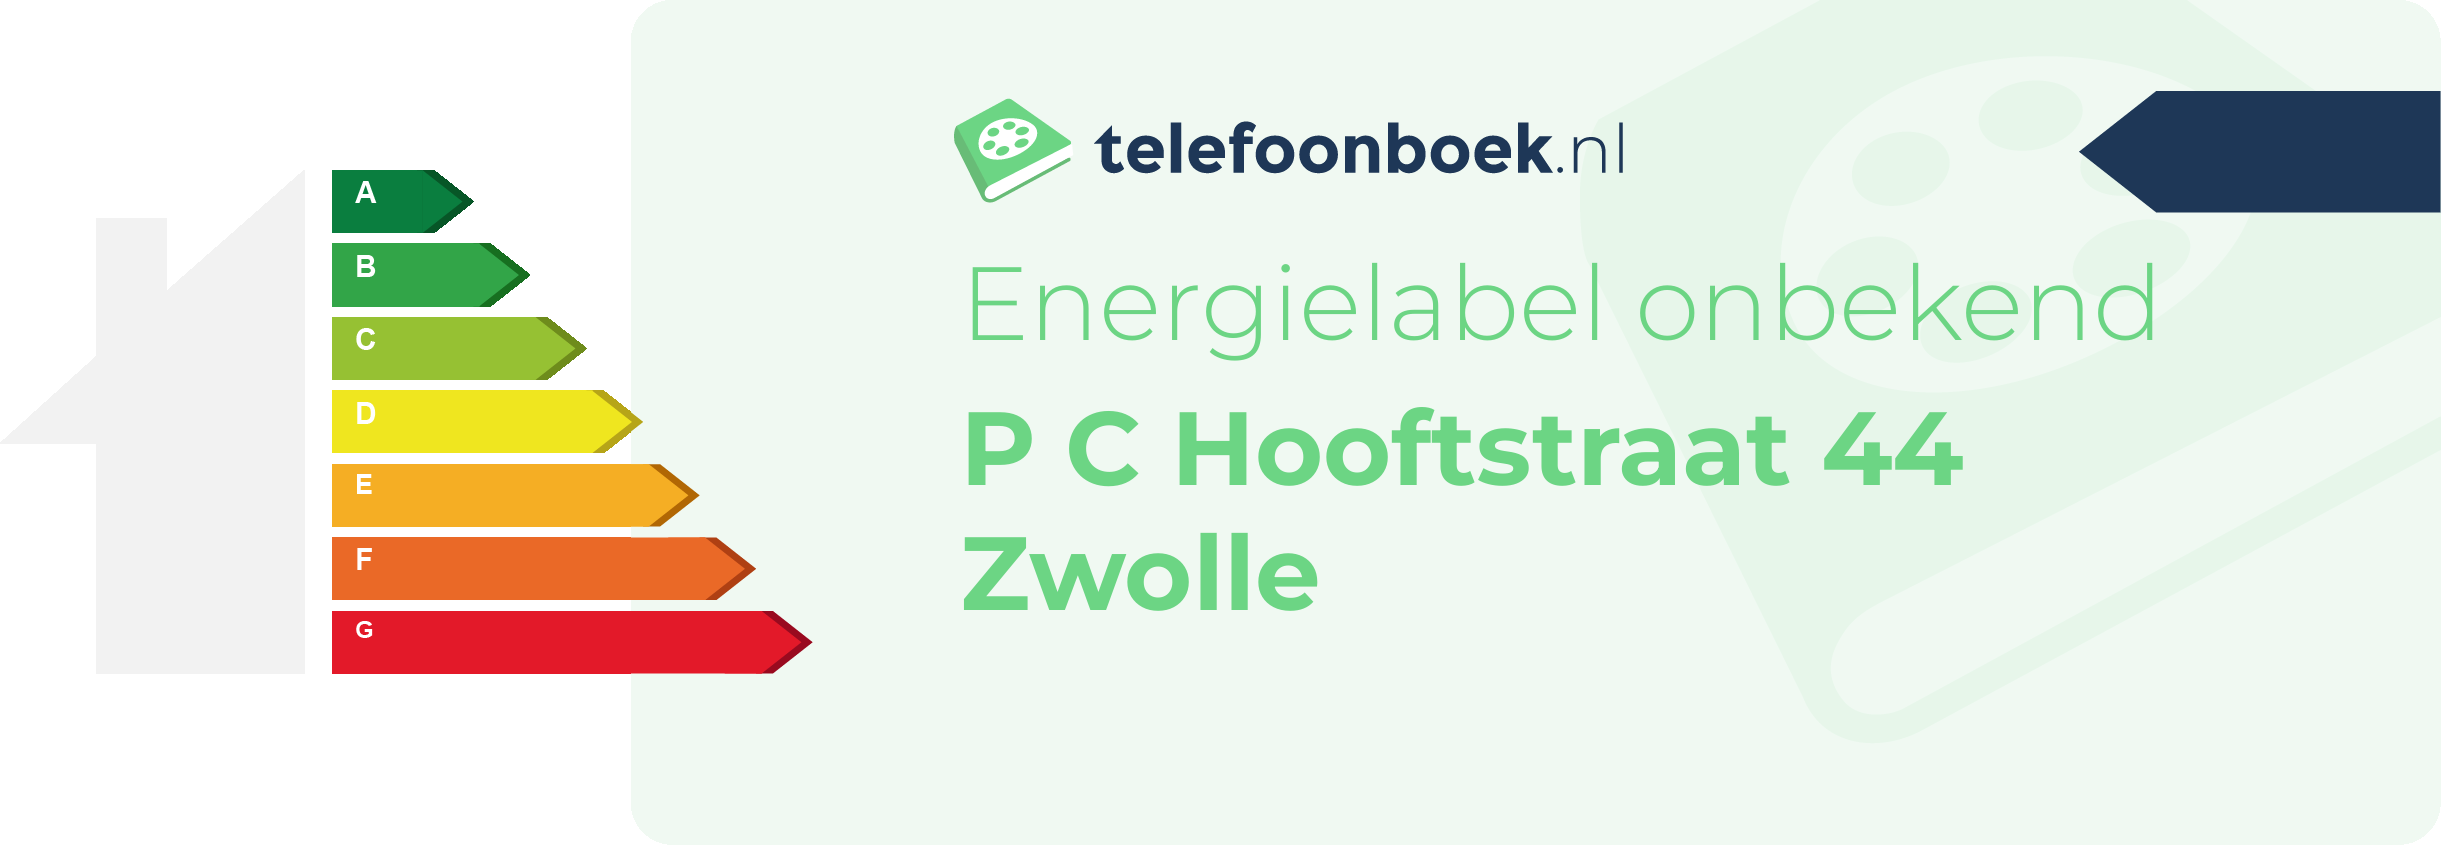 Energielabel P C Hooftstraat 44 Zwolle